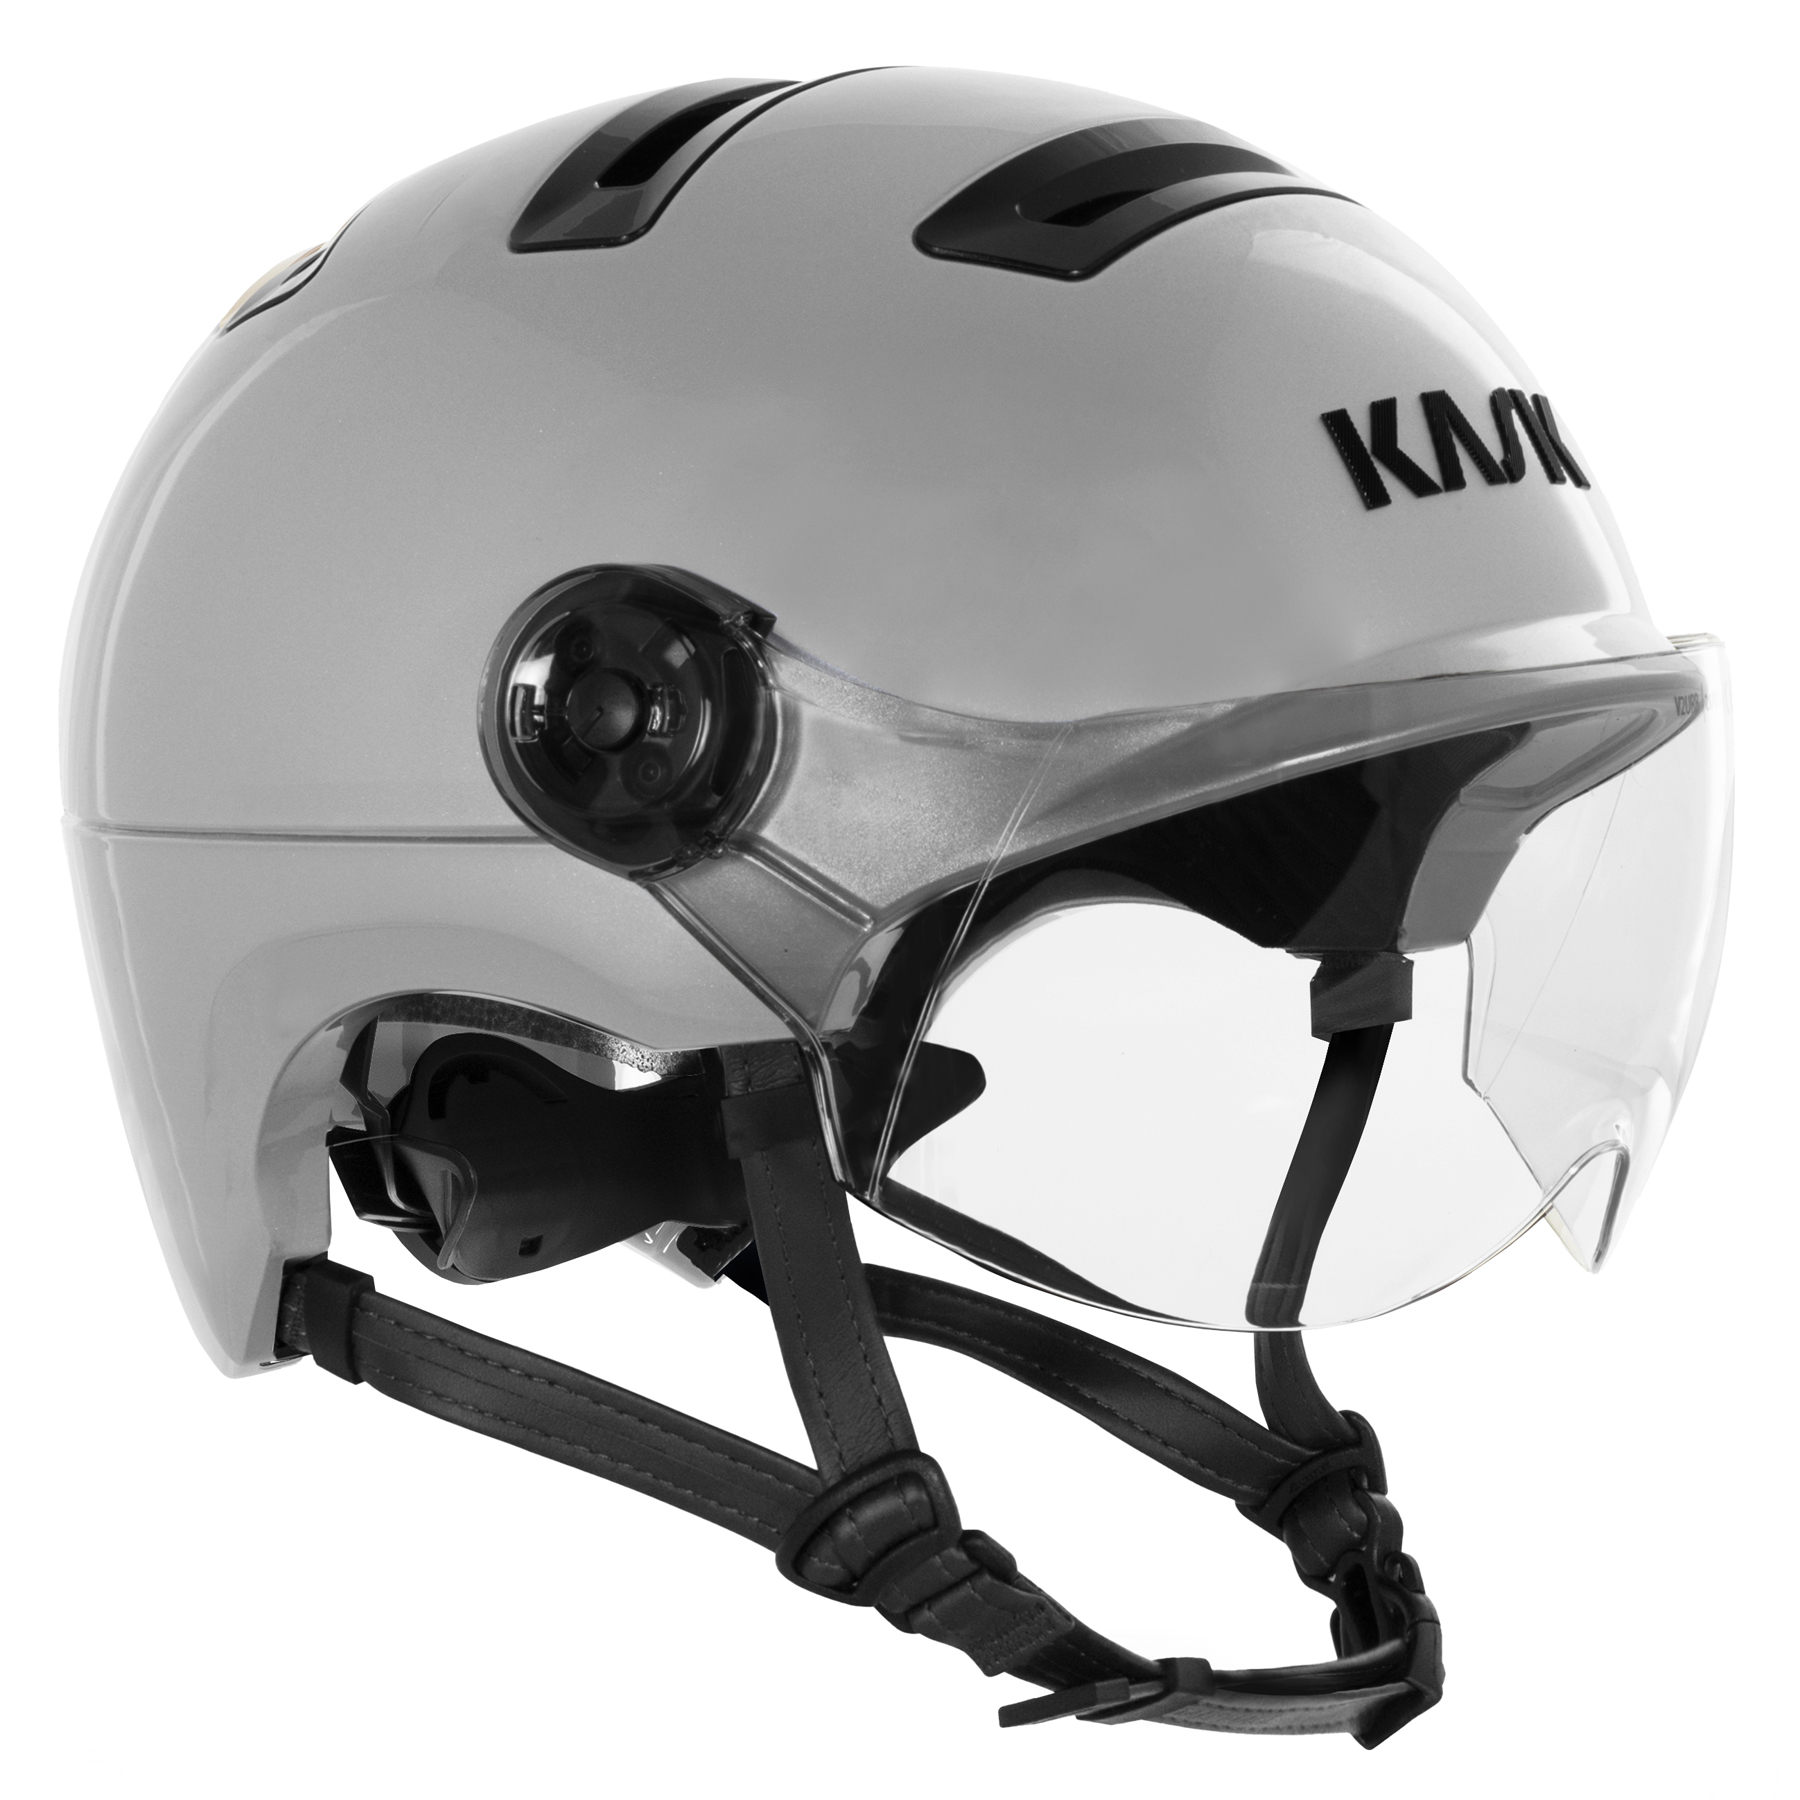 Productfoto van KASK Urban R WG11 Helm - Silver